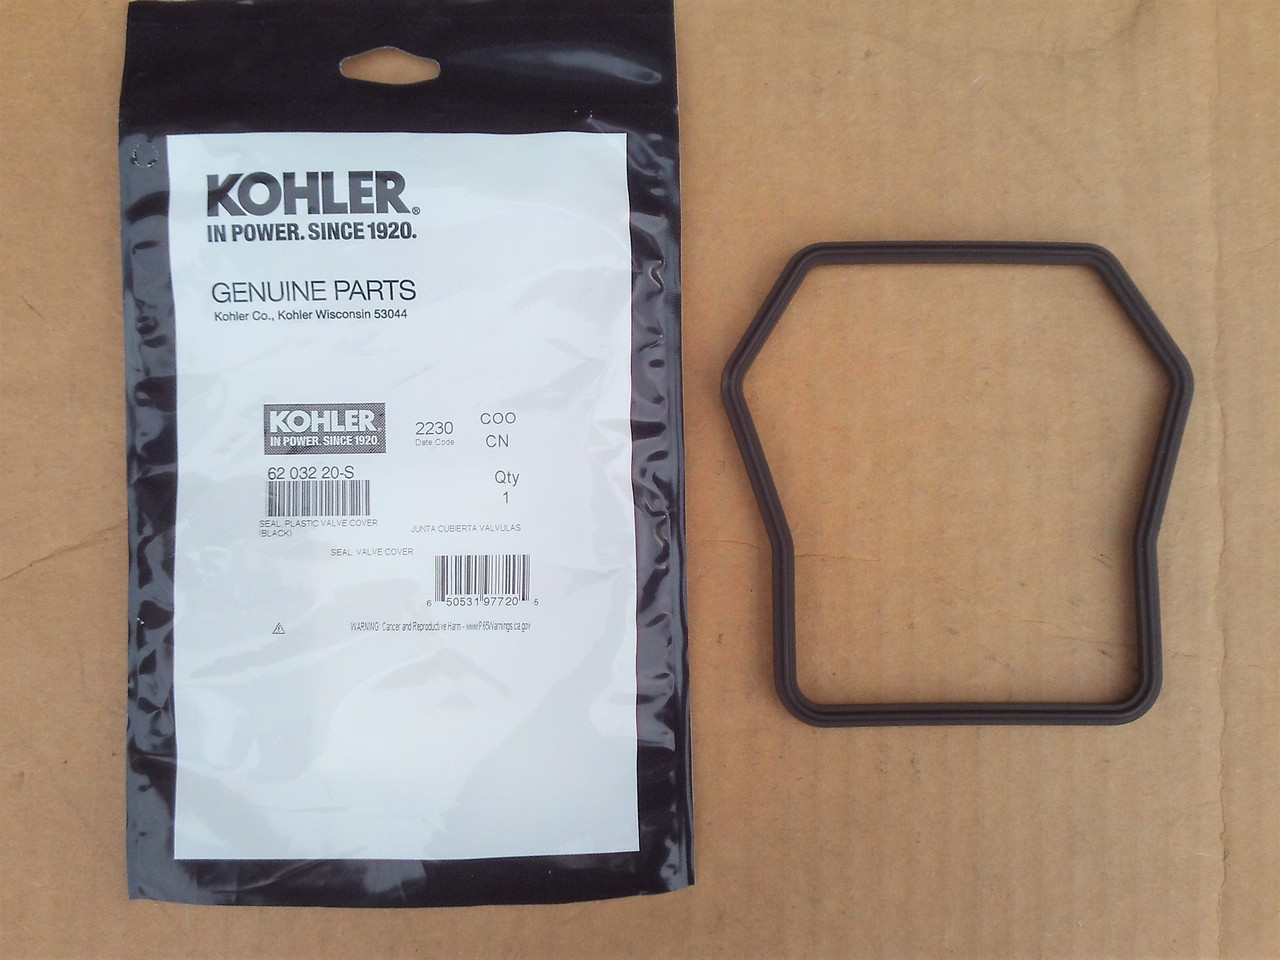 Kohler Valve Cover Gasket Seal for CV1000, CV940, CV980, ECH940, ECH980, ECV940, ECV980, 6203215S, 6203220S, 62 032 15-S, 62 032 20-S